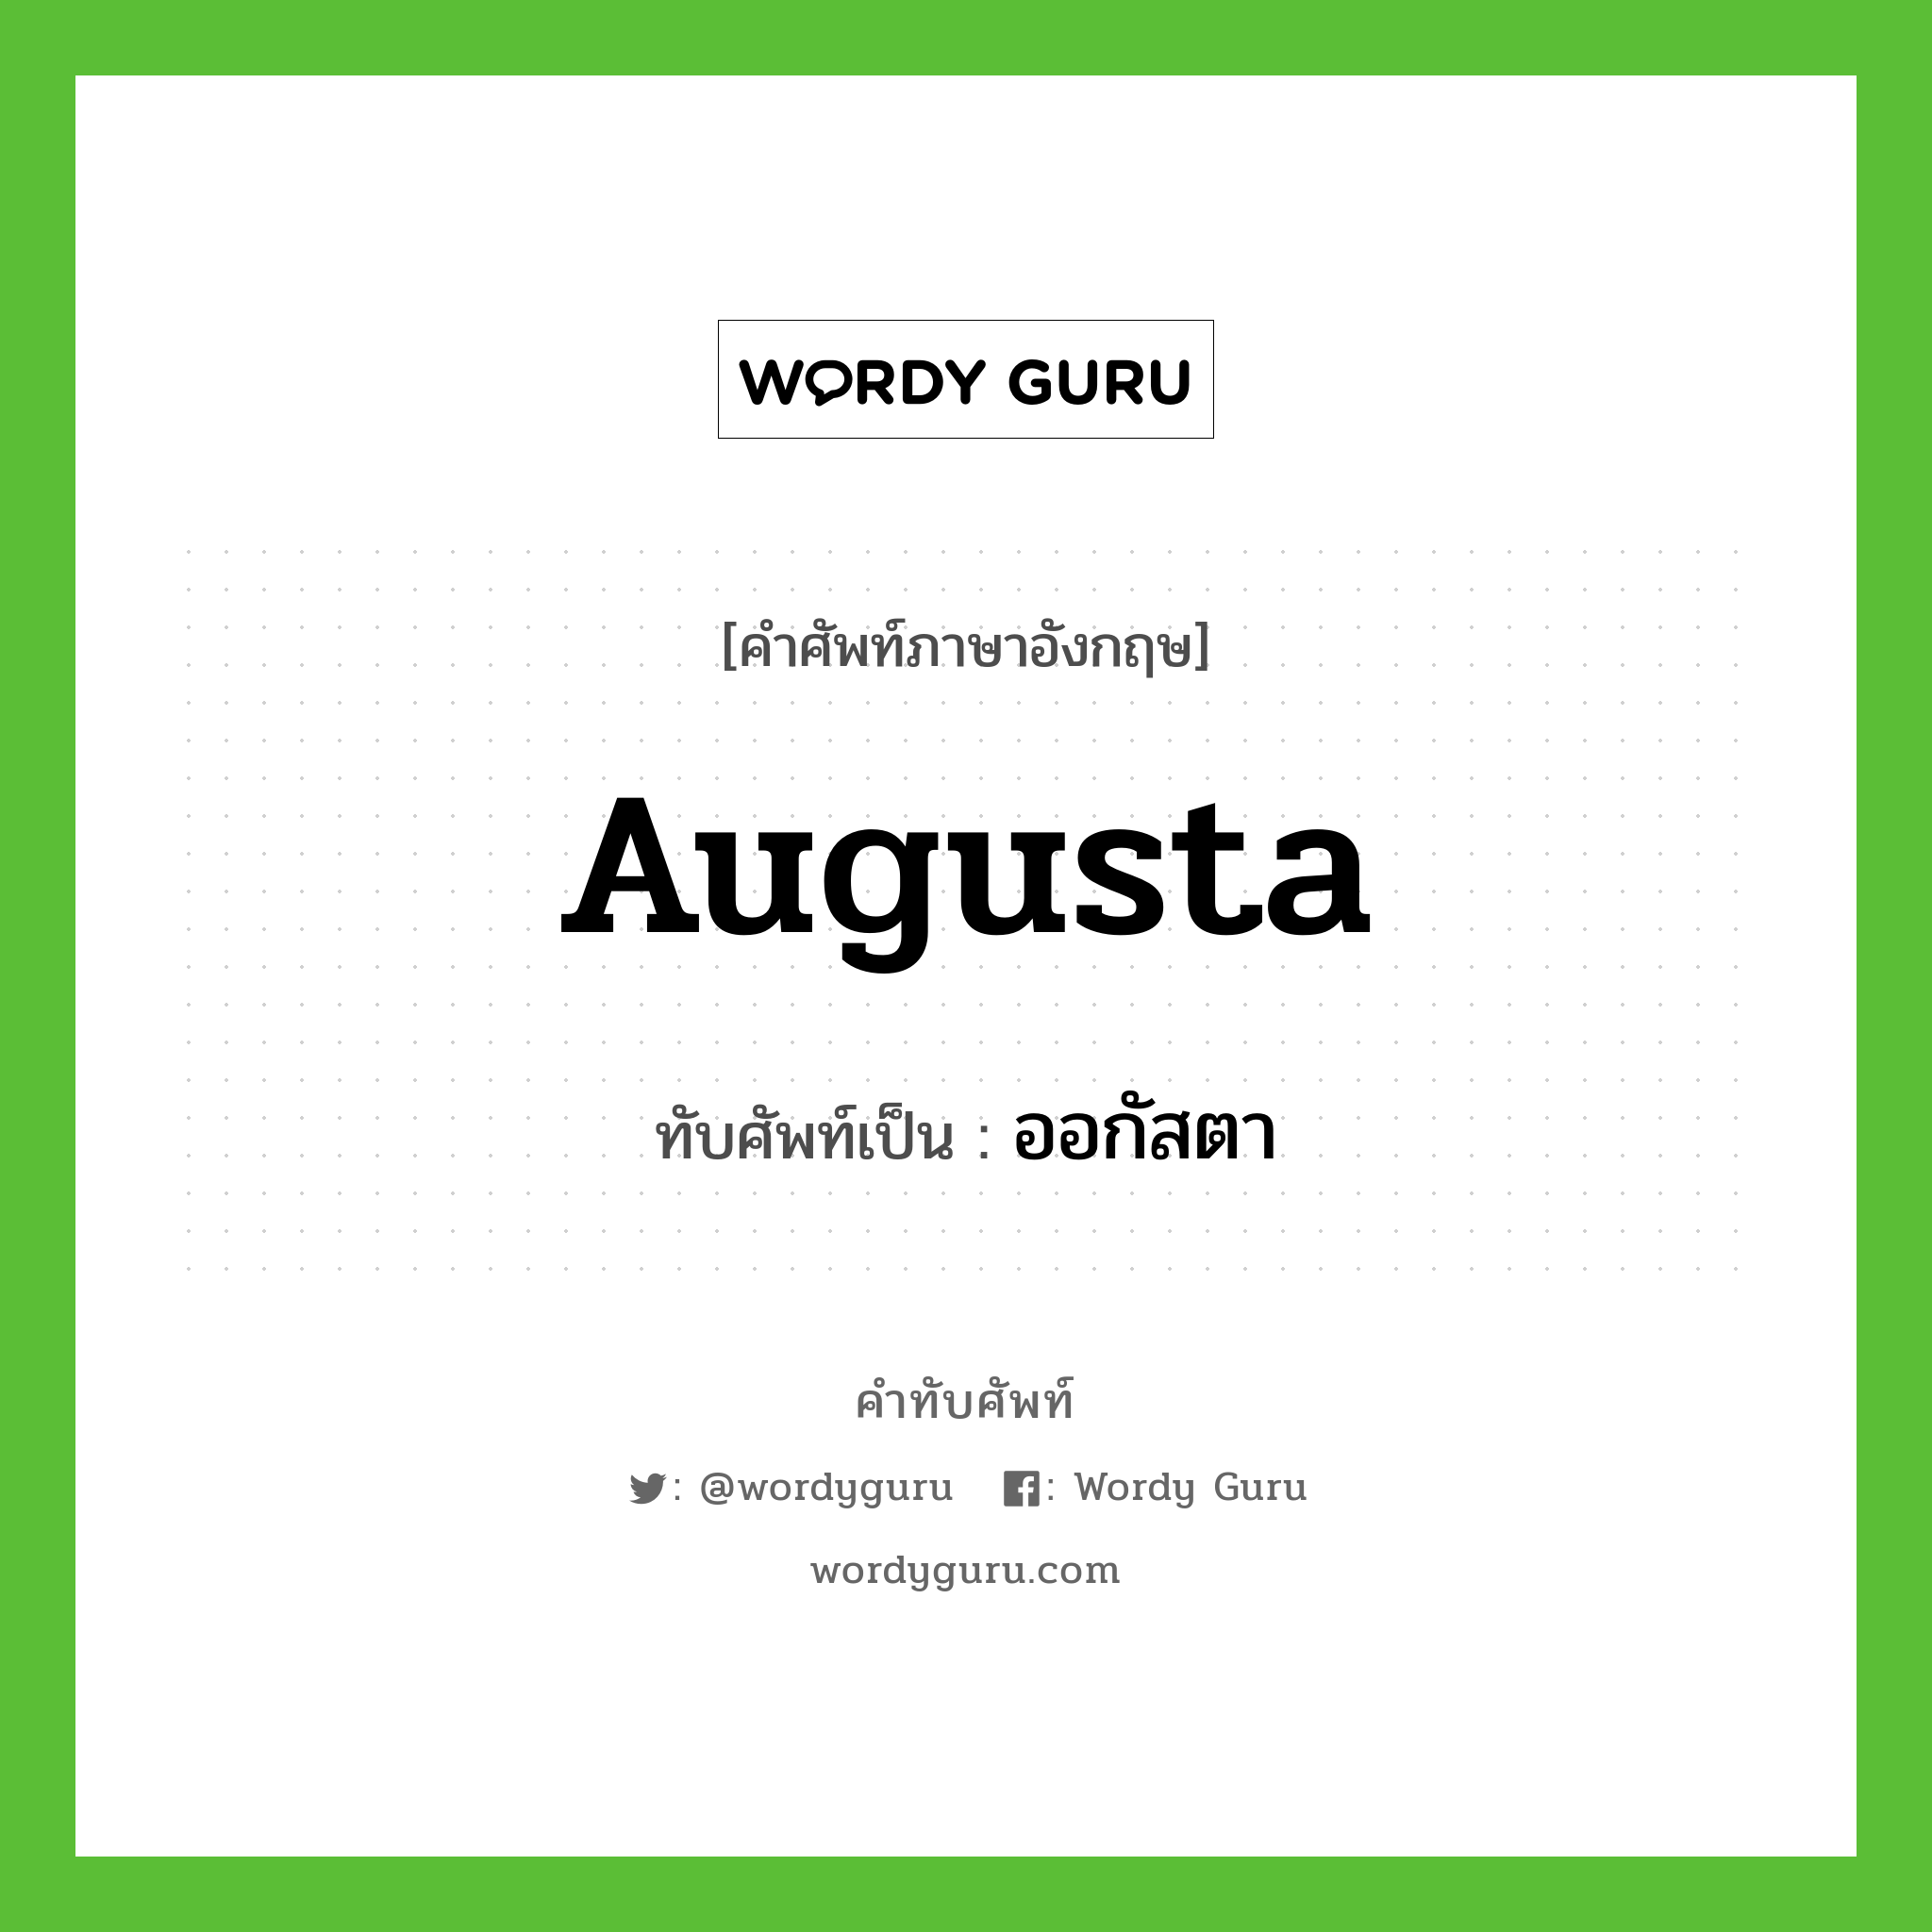 Augusta เขียนเป็นคำไทยว่าอะไร?, คำศัพท์ภาษาอังกฤษ Augusta ทับศัพท์เป็น ออกัสตา